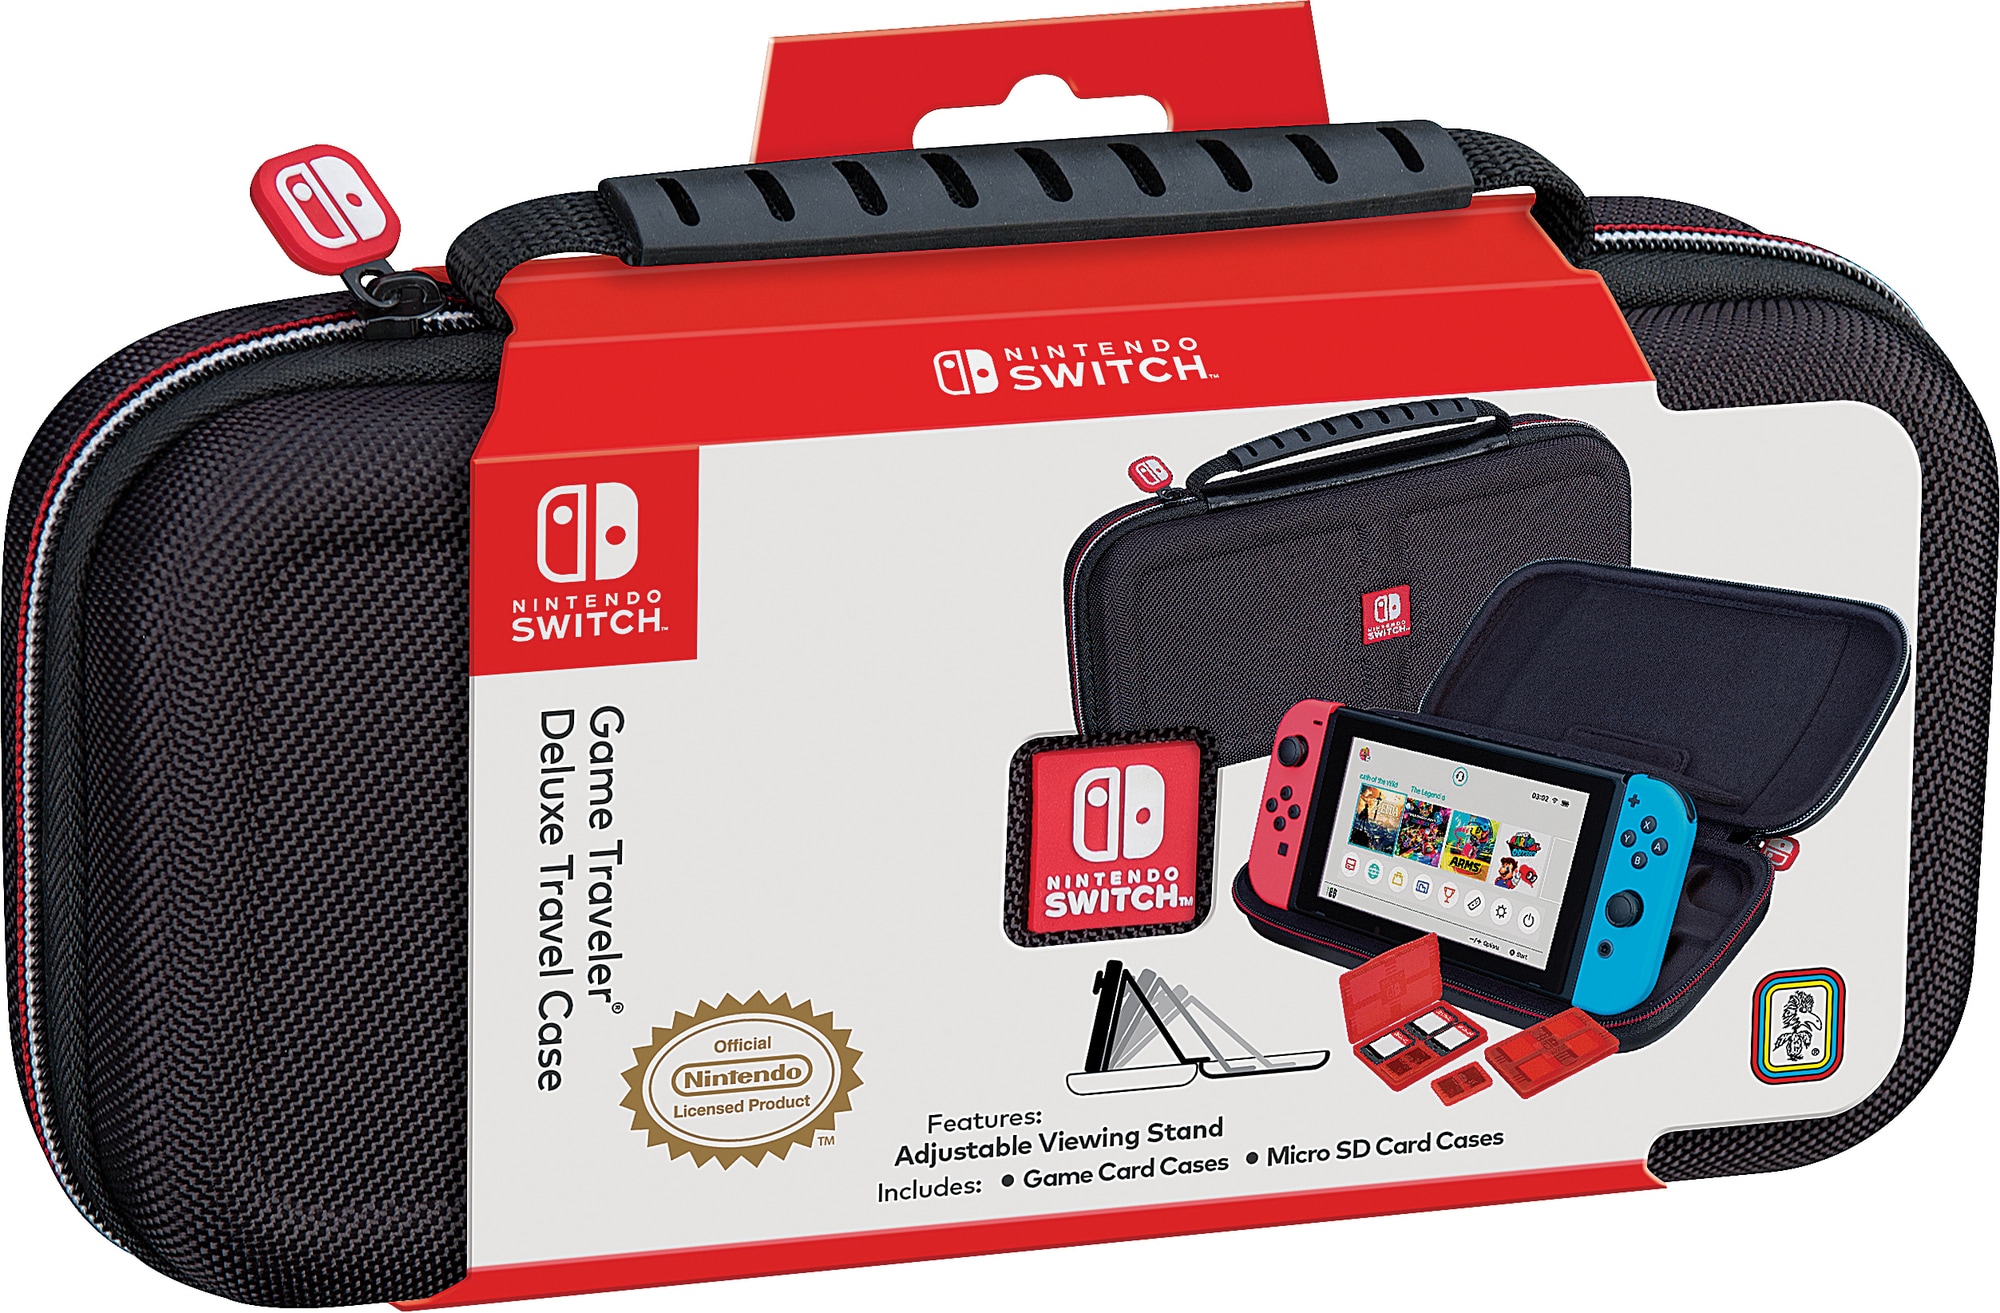 Nintendo Switch Deluxe rejseetui - Nintendo tilbehør - Elgiganten